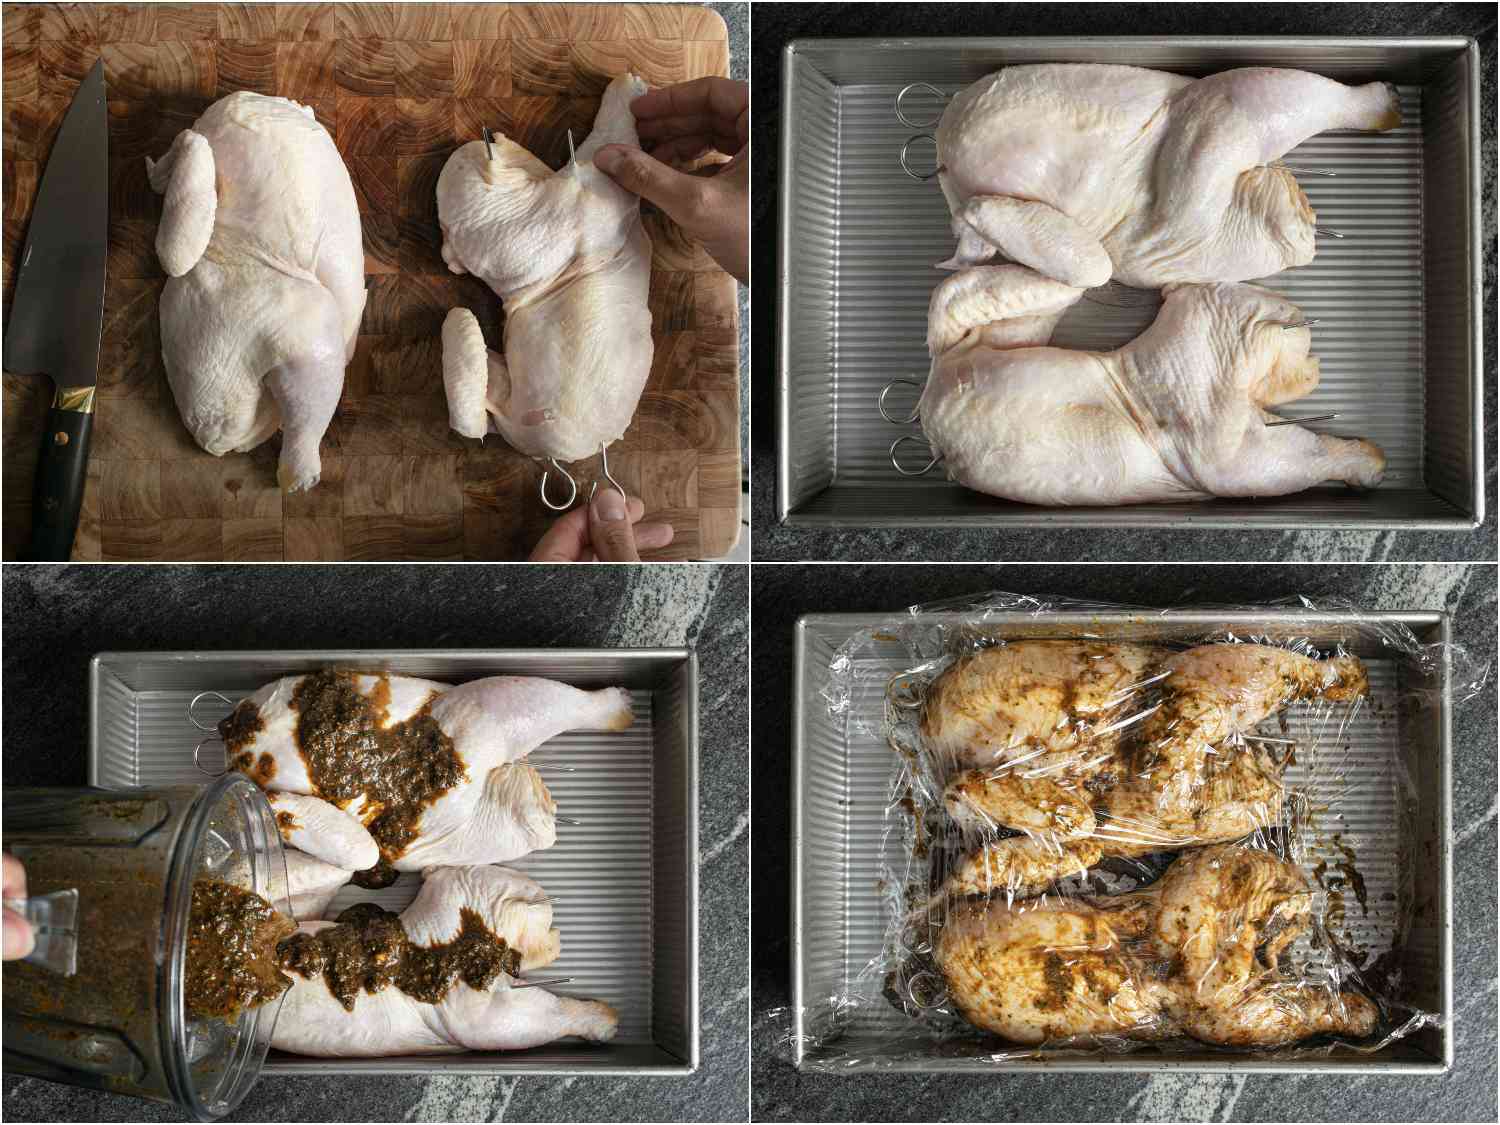 拼贴:把半只鸡串在砧板上;一半放在烤盘里;腌料倒在上面;腌料全部涂在半块鸡肉上，用保鲜膜盖好gydF4y2Ba